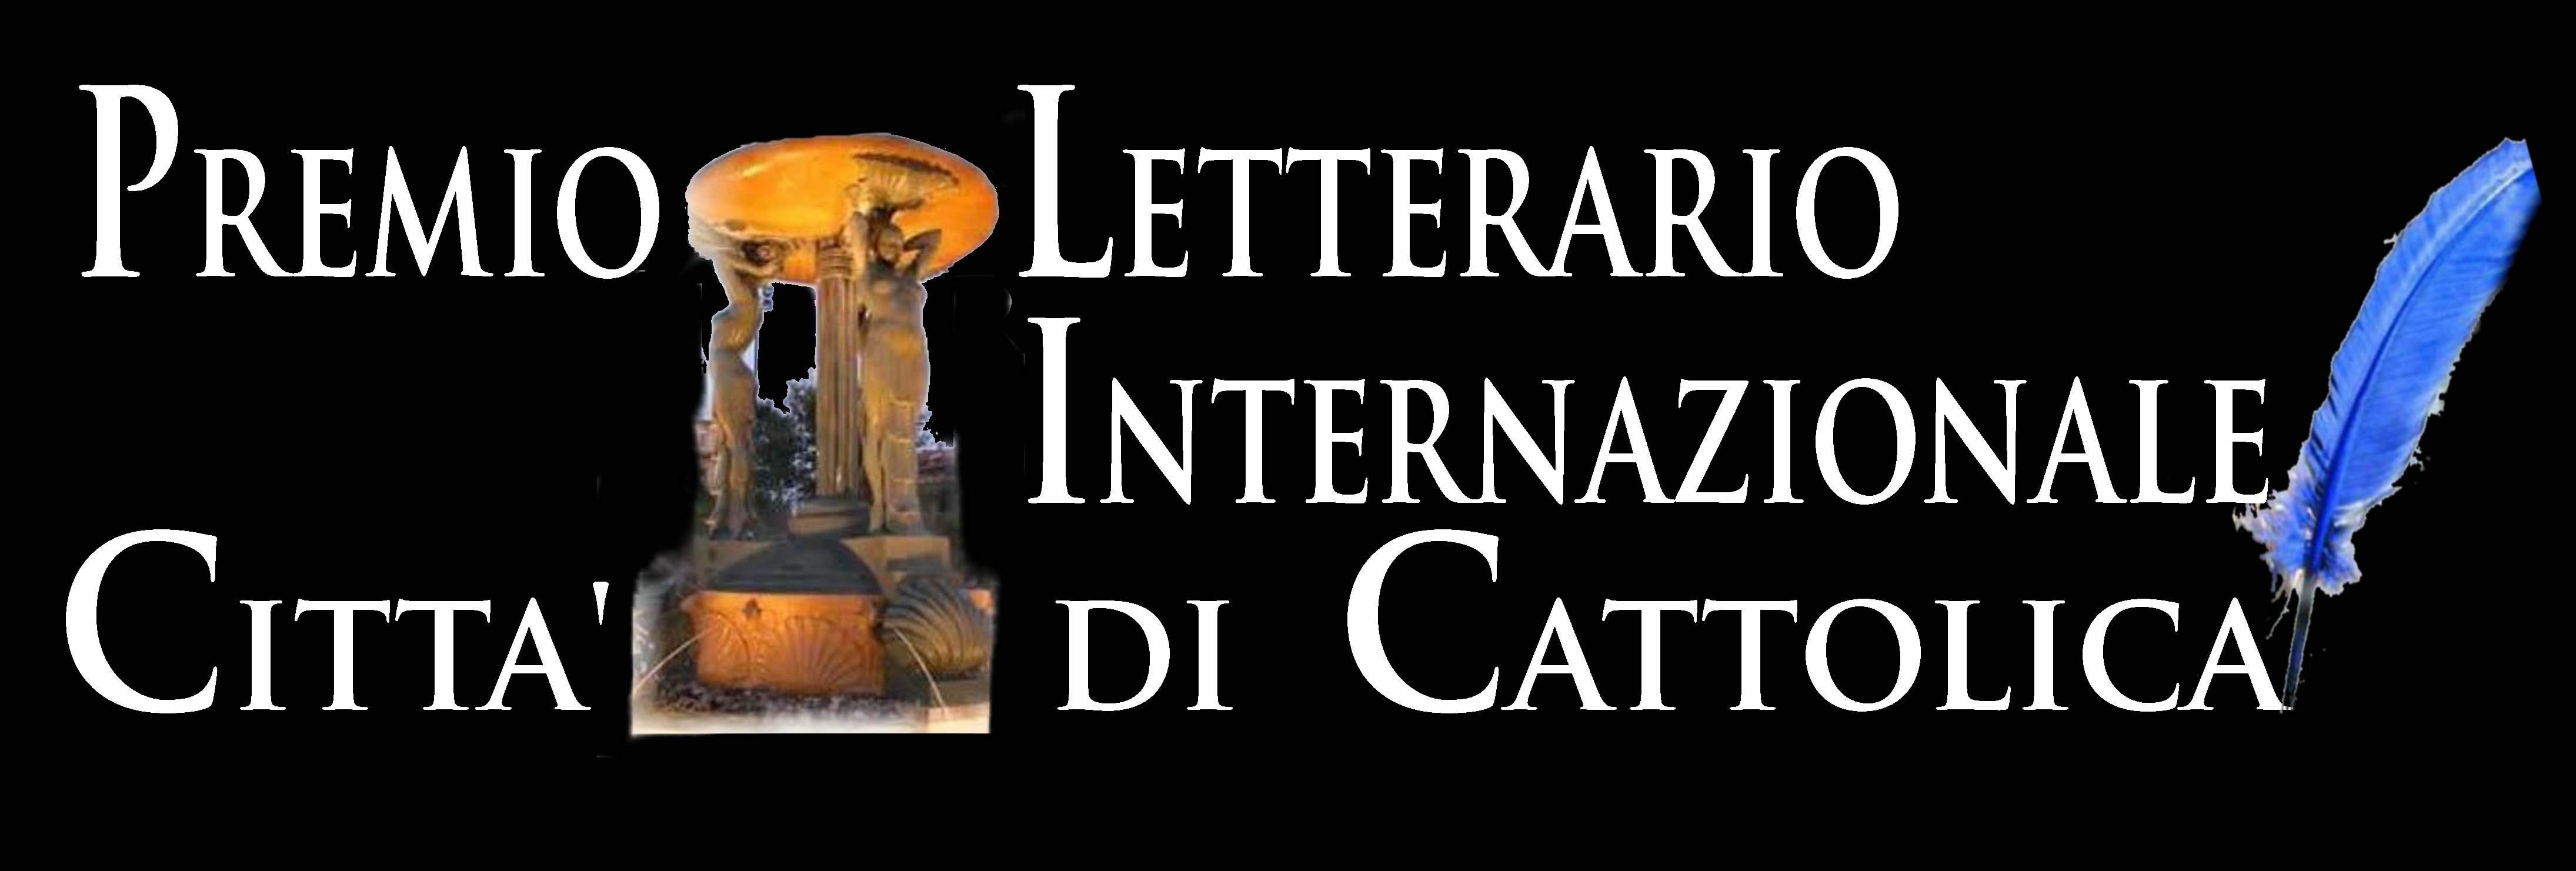 Premio Letterario Internazionale Città di Cattolica – Pegasus Literary Awards 2019